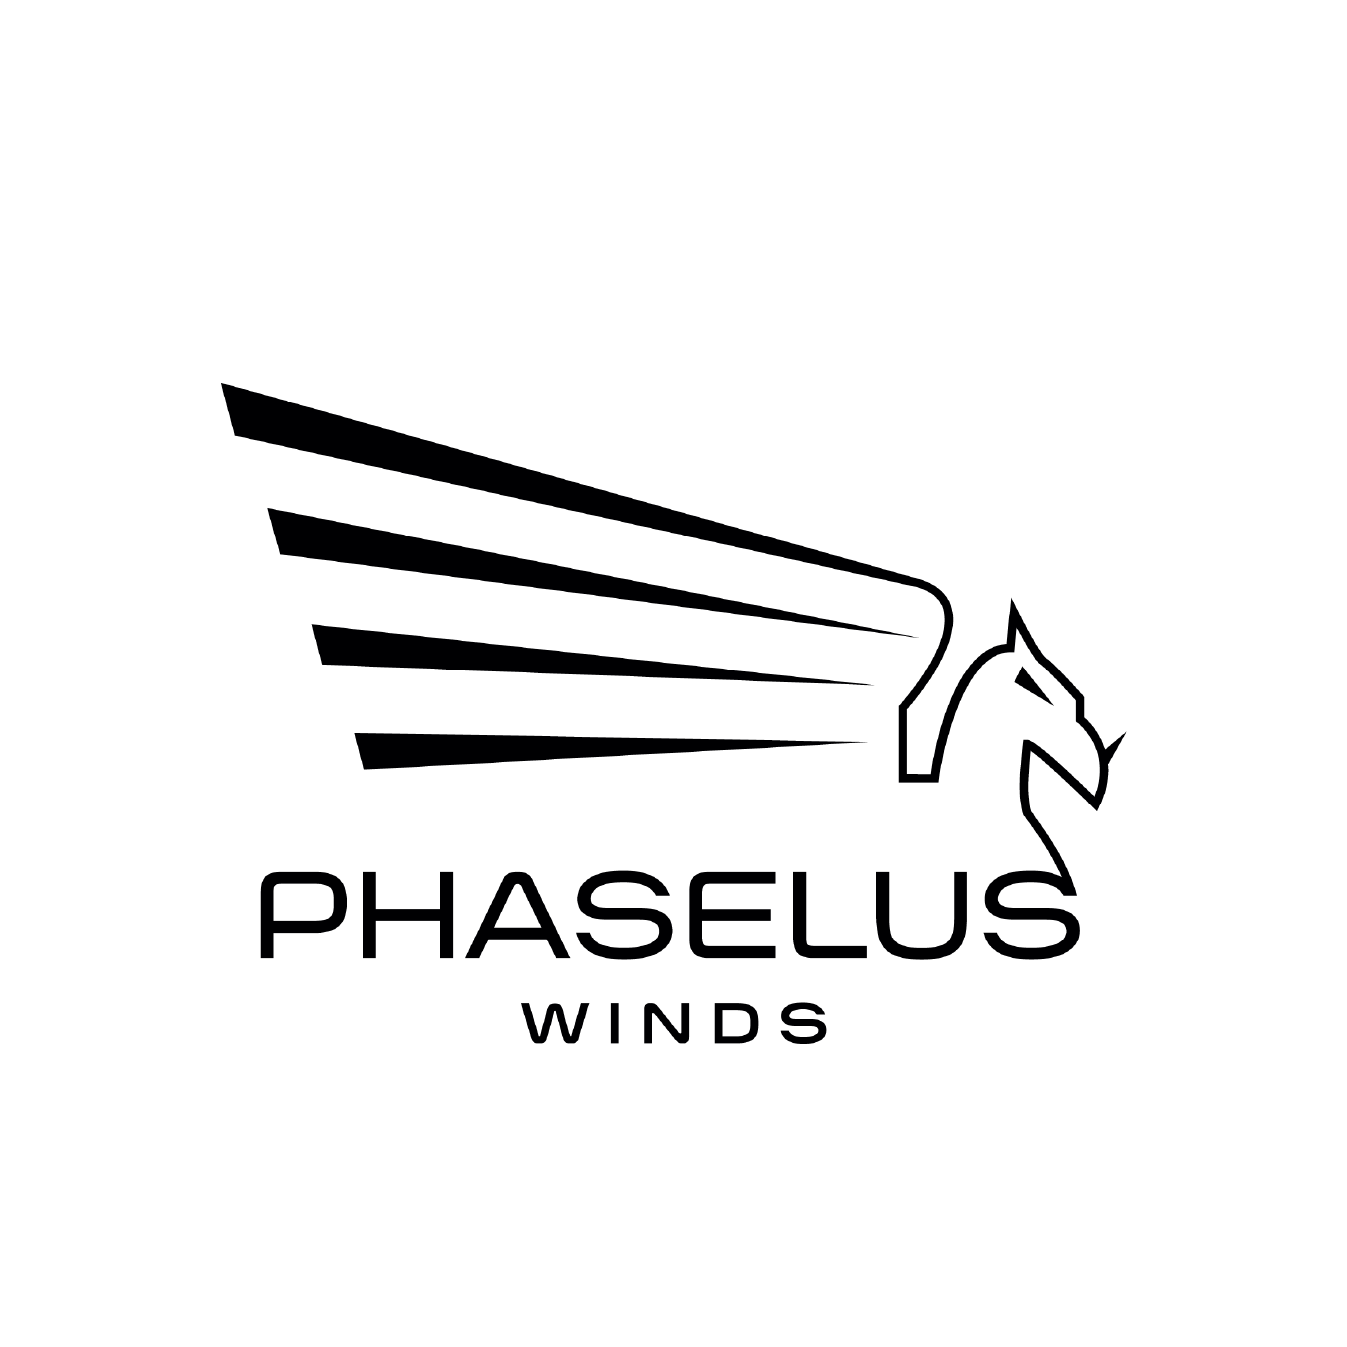 Phaselus